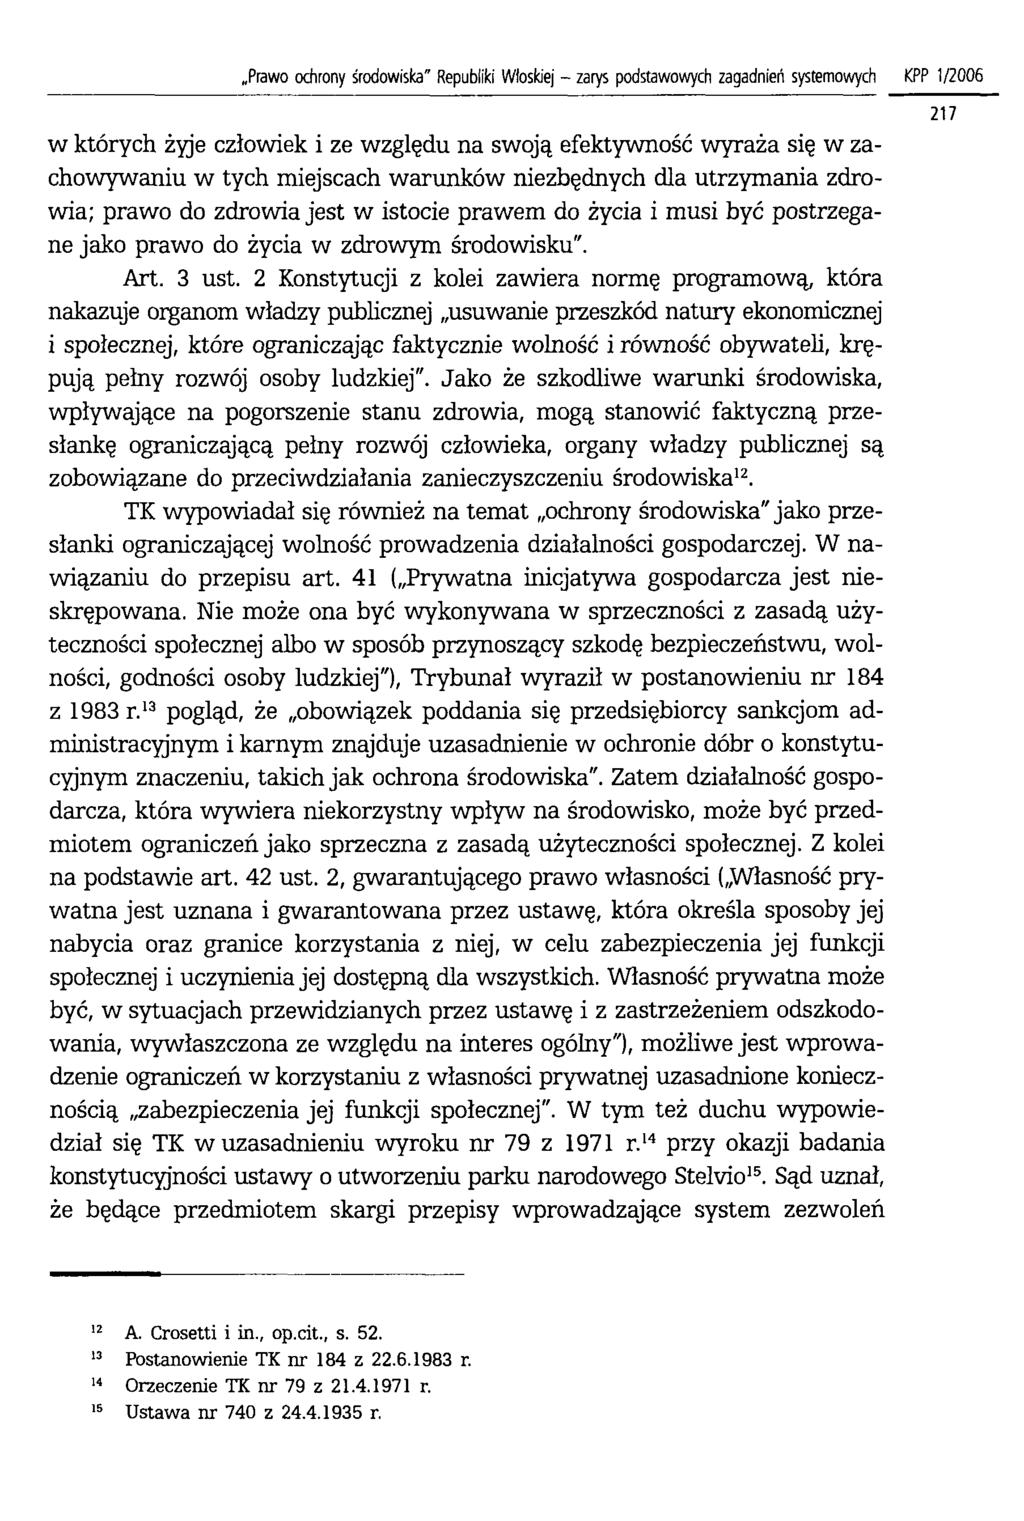 Prawo ochrony środowiska" Republiki Włoskiej - zarys podstawowych zagadnień systemowych KPP 1/2006 w których żyje człowiek i ze względu na swoją efektywność wyraża się w zachowywaniu w tych miejscach